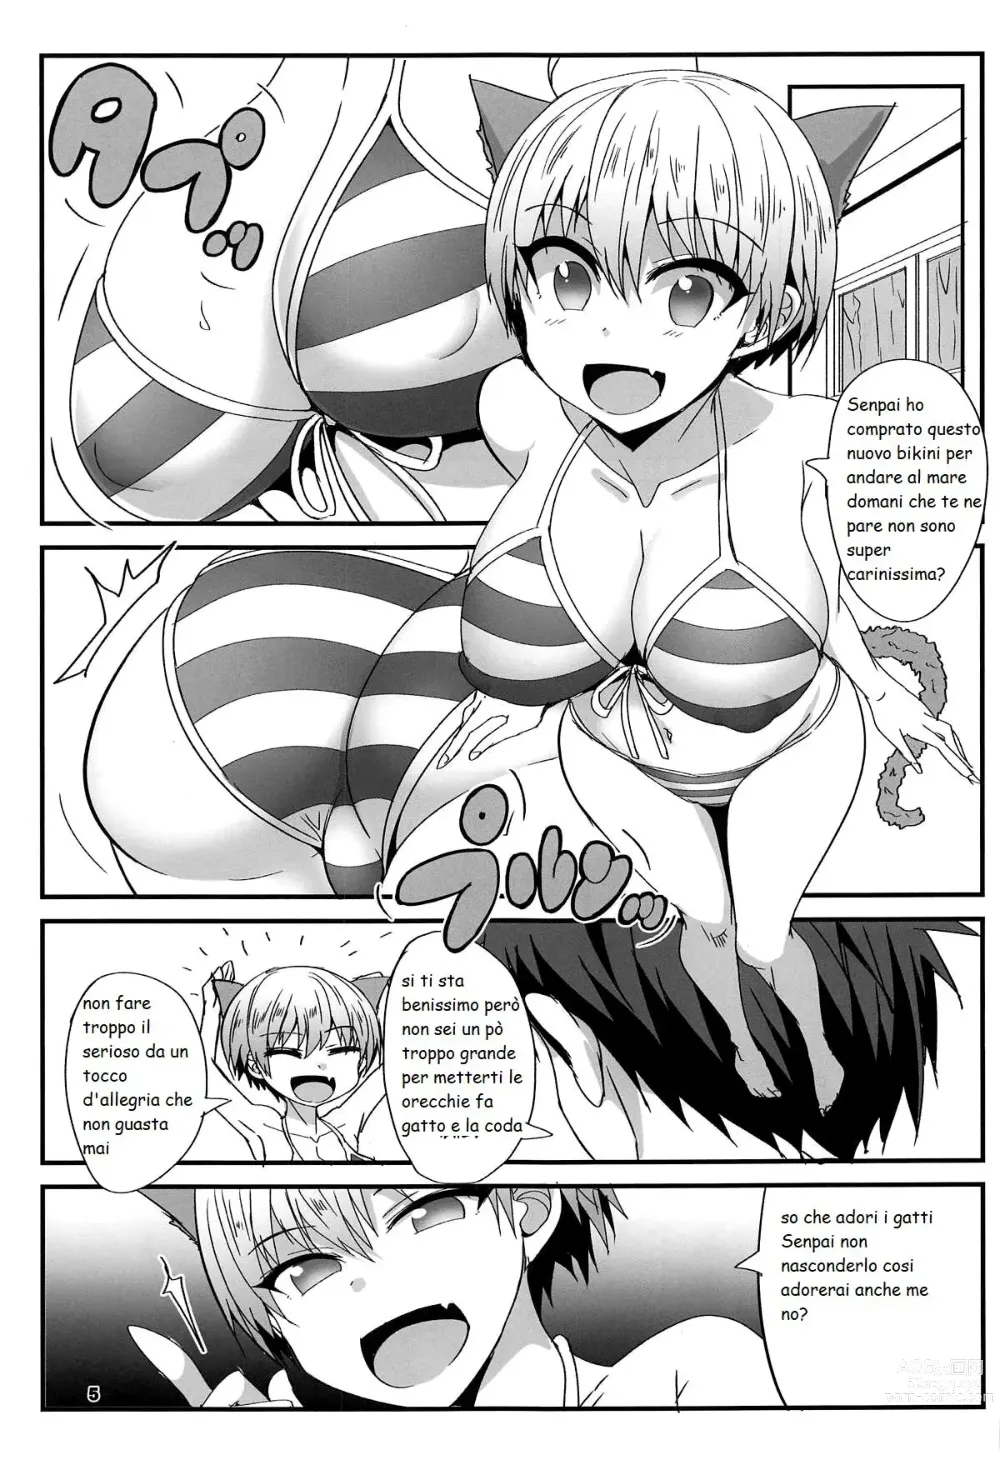 Page 1 of doujinshi uzaki vuole fare del sesso prima di andare in spiaggia